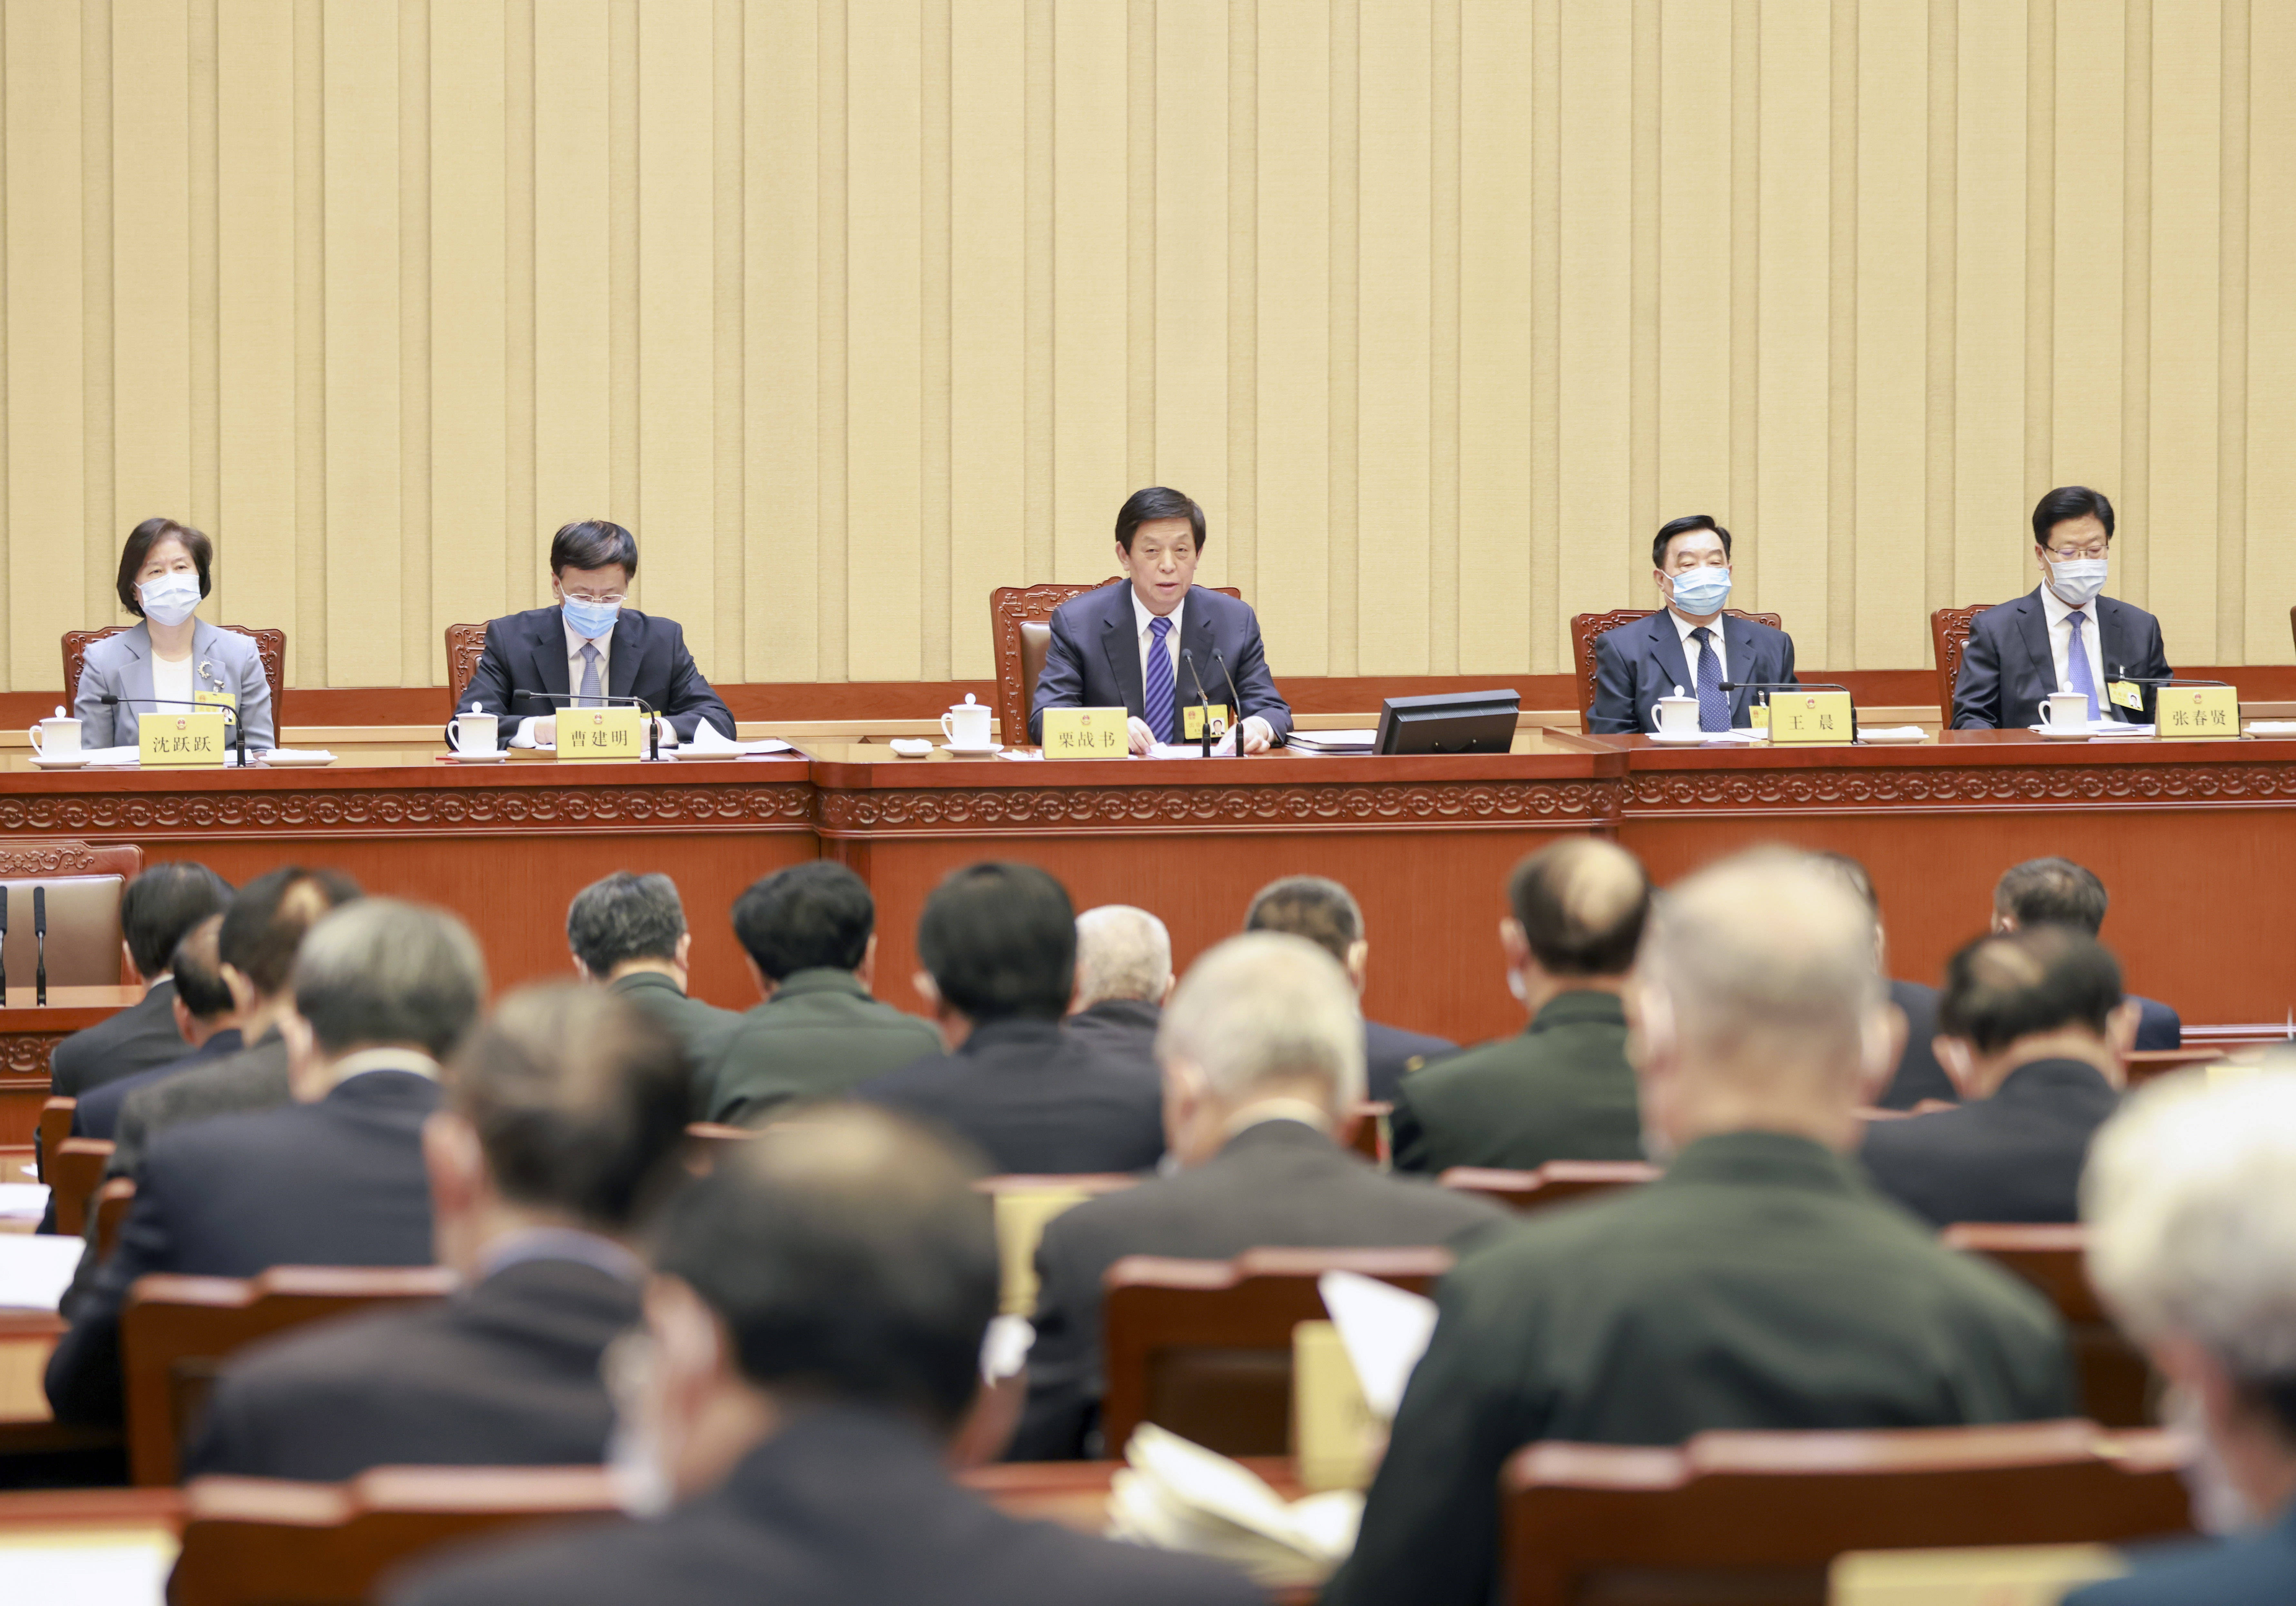 十三届全国人大常委会第二十七次会议在京举行